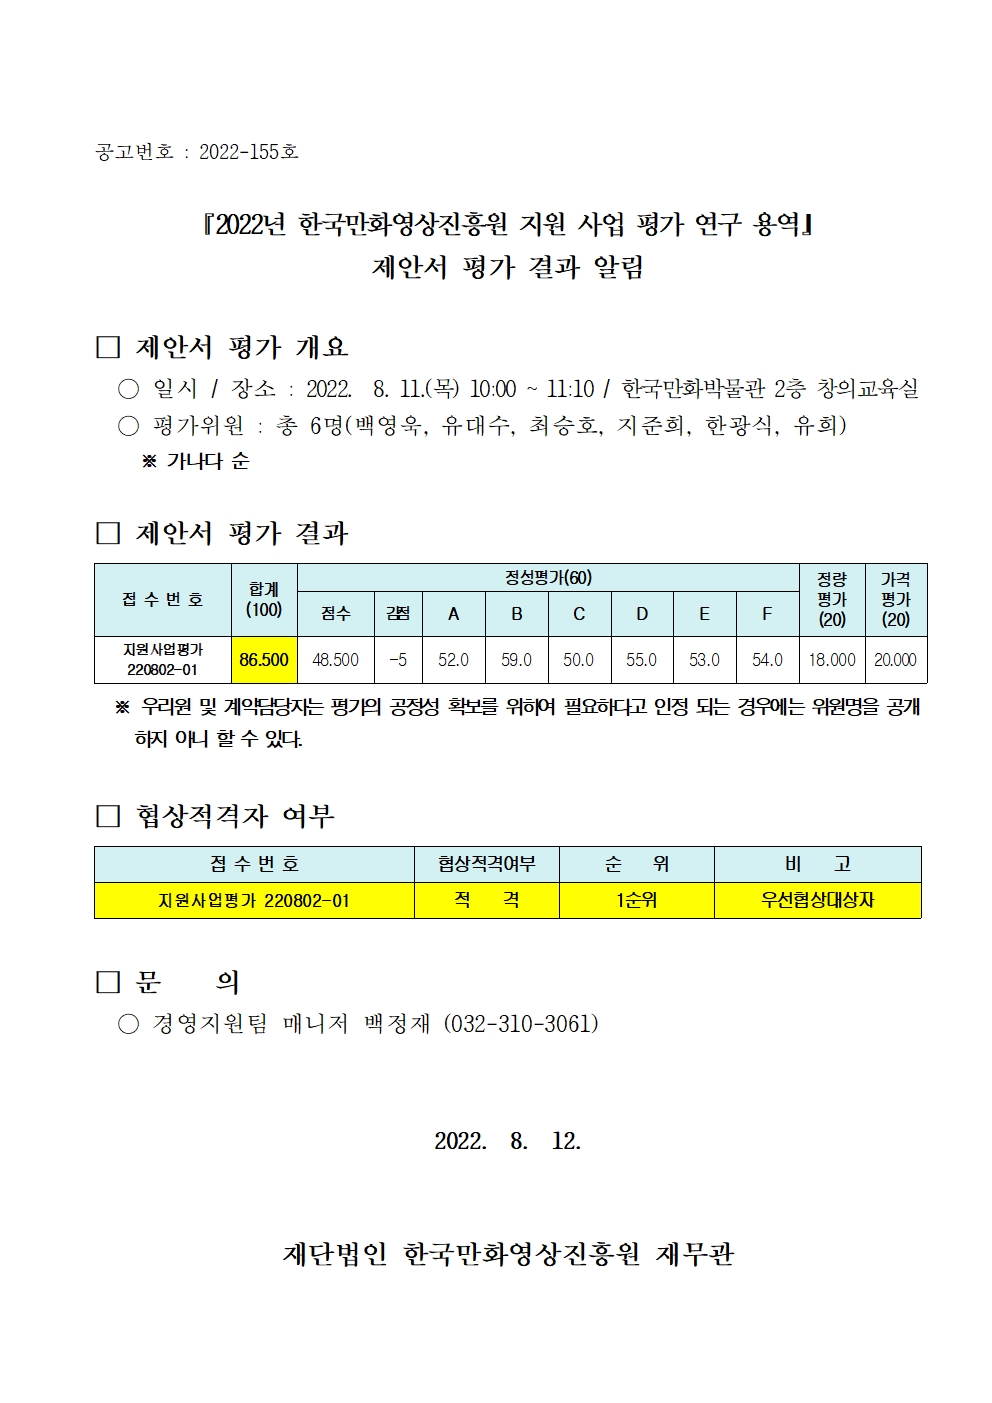 『2022년 한국만화영상진흥원 지원 사업 평가 연구 용역』 제안서 평가 결과 알림